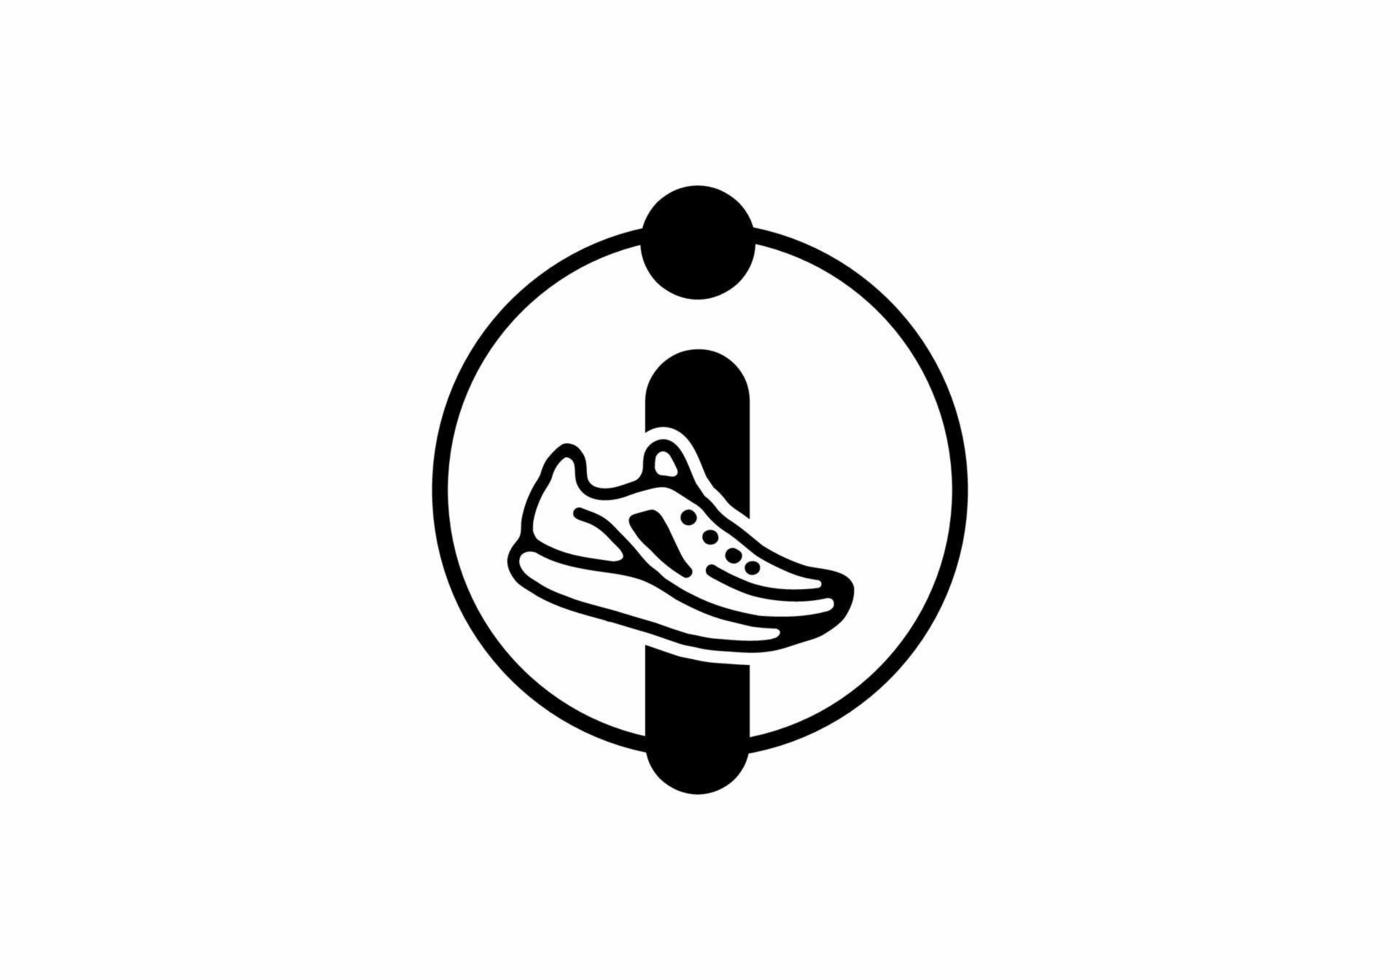 zwarte i beginletter met schoenen in cirkel vector